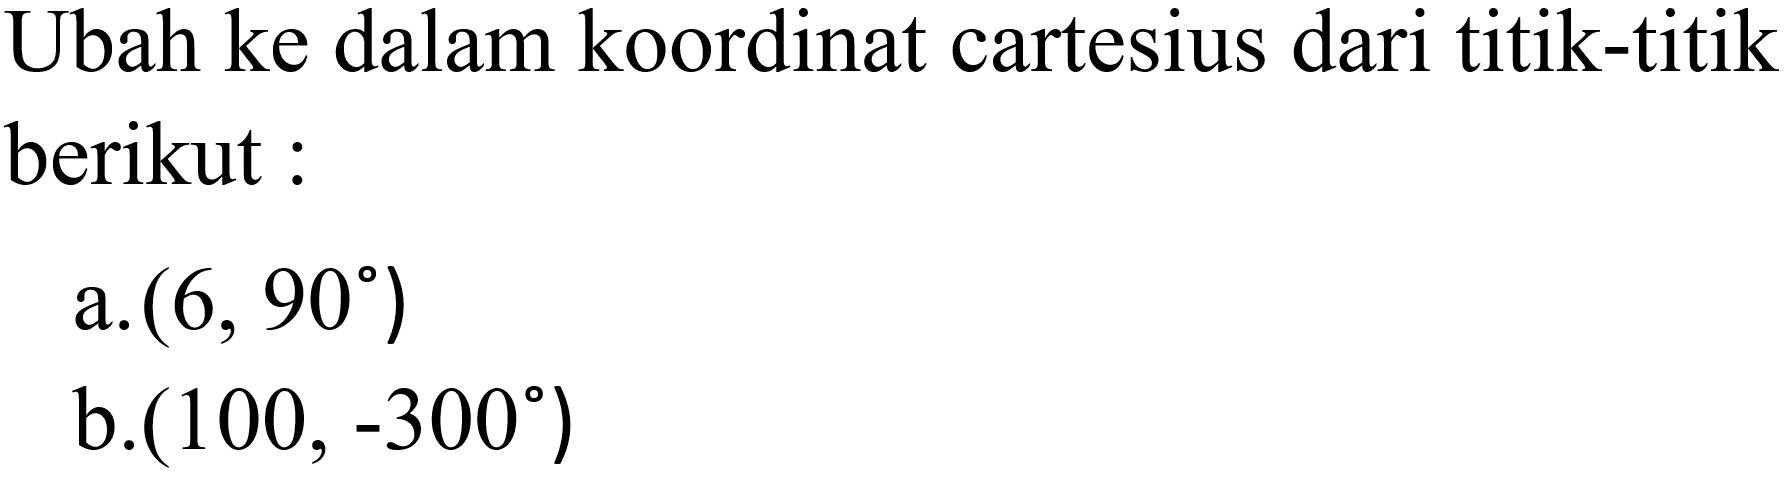 Ubah ke dalam koordinat cartesius dari titik-titik berikut:a.  (6,90) b.  (100,-300) 